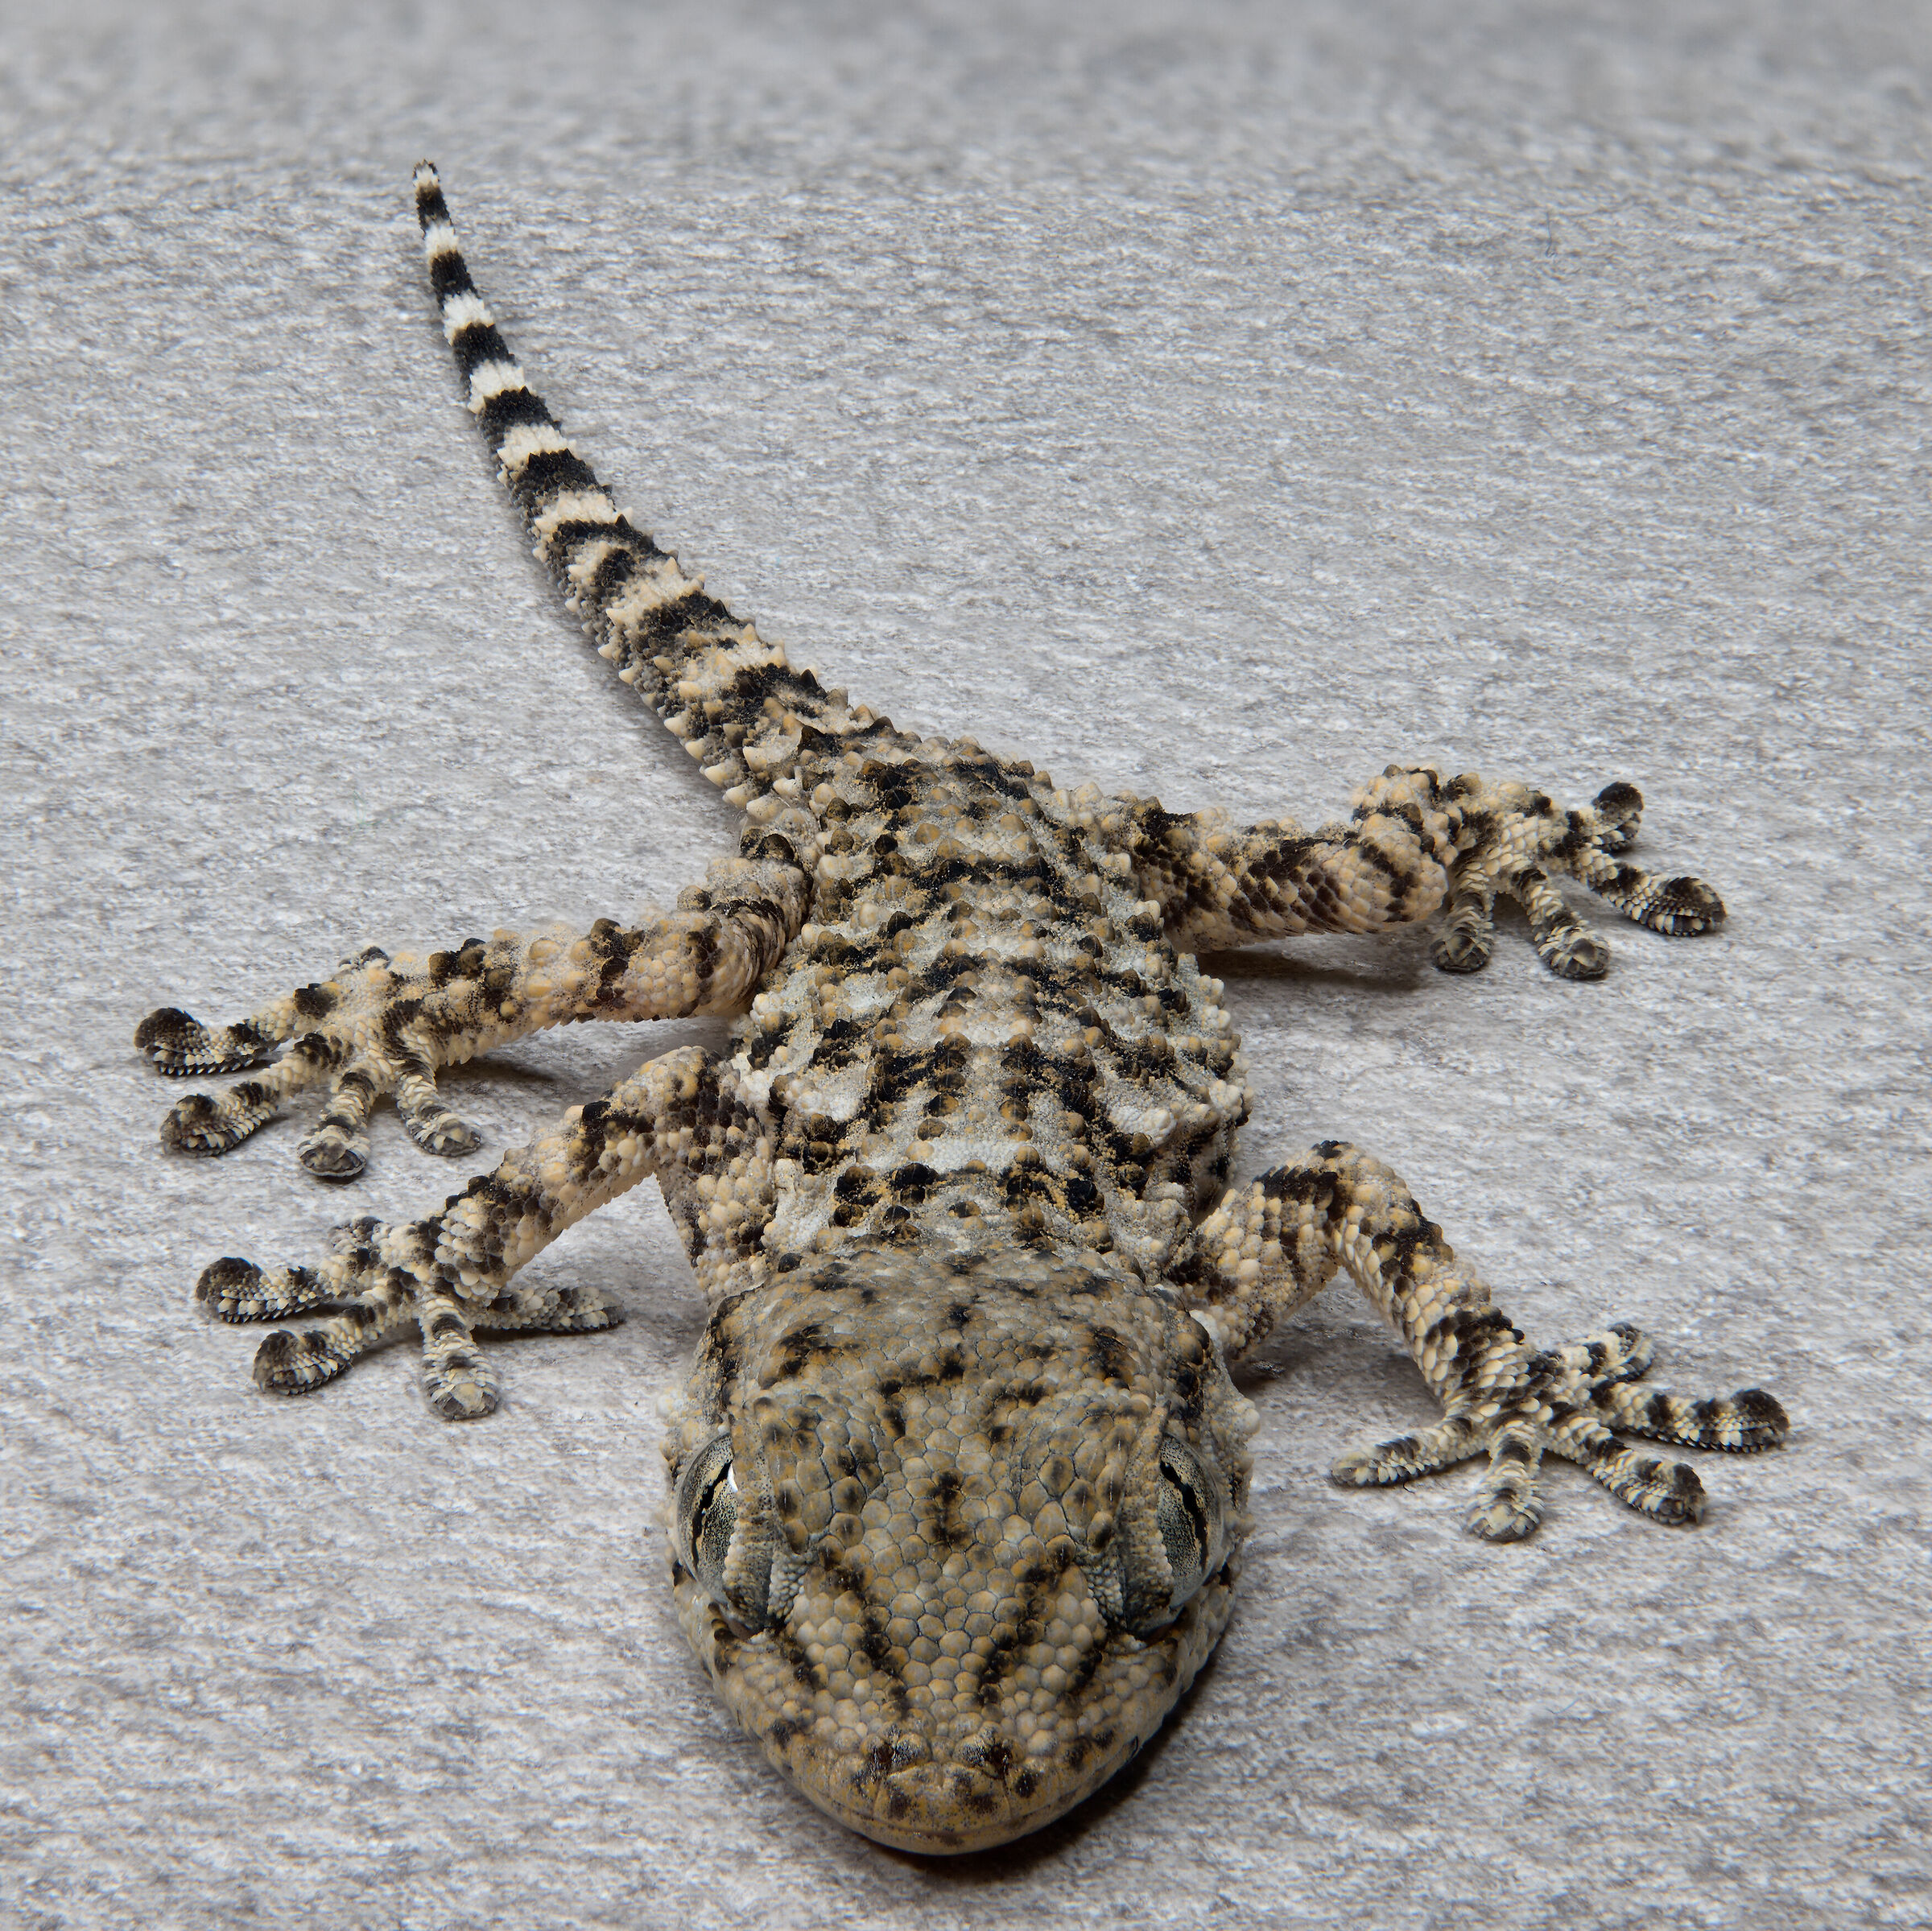 Mauritanic Tarentola (Gecko)...